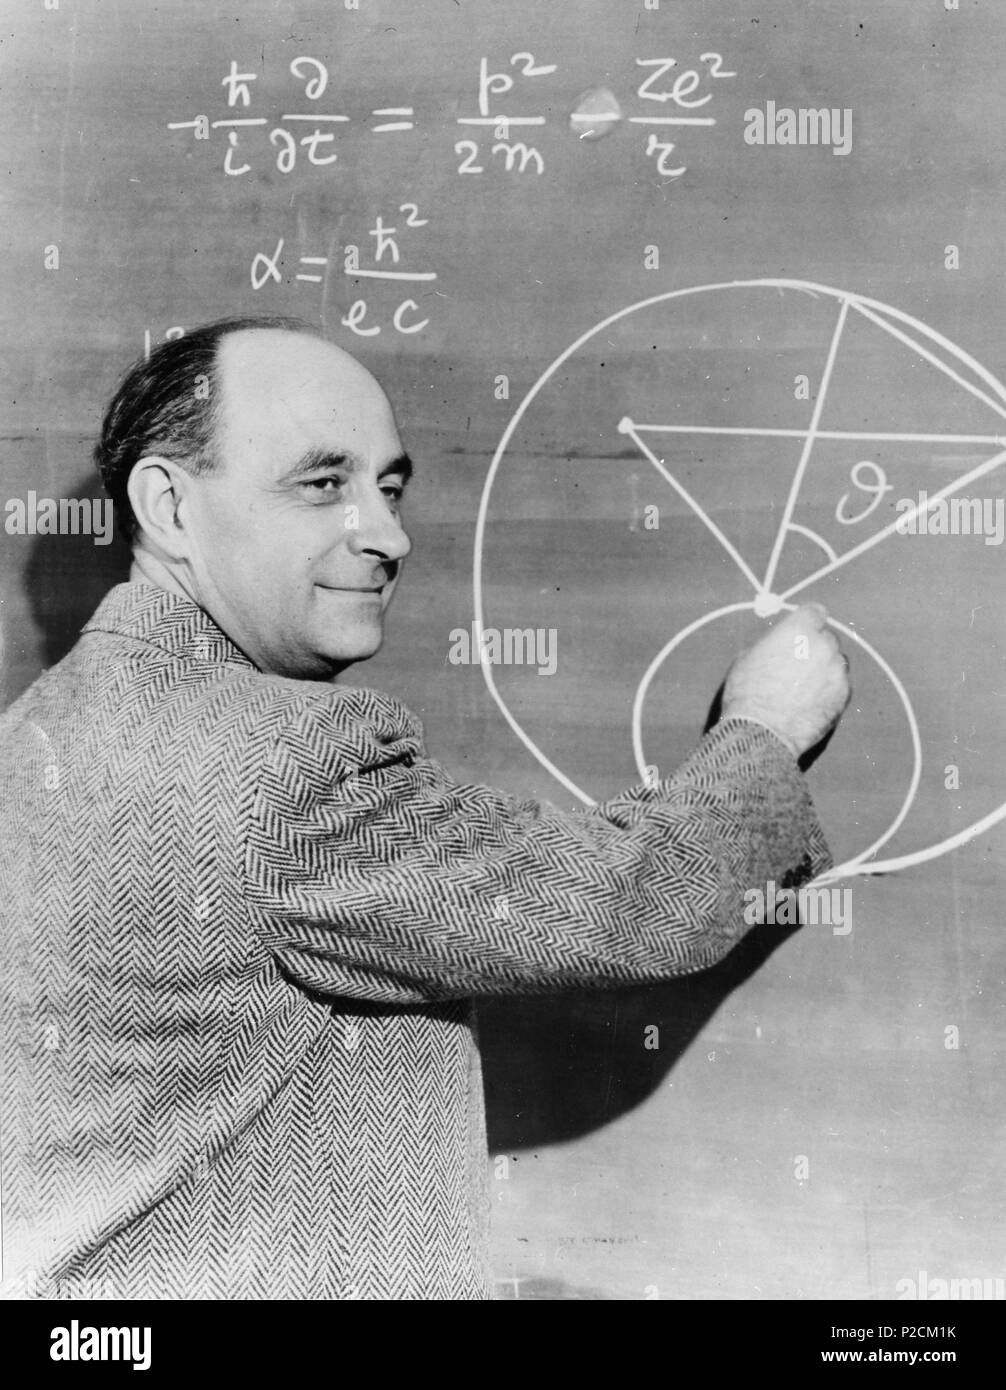 . Englisch: Enrico Fermi an der Tafel. Interessant ist, dass die Tafel enthält einen Fehler: Die Gleichung für die feinstrukturkonstante sollte lesen? ? = e2? ? C{displaystyle alpha={frac{e^{2}}{hbar{}c}}}. Datum unbekannt. Smithsonian Institution 18 Enrico Fermi an der Tafel Stockfoto